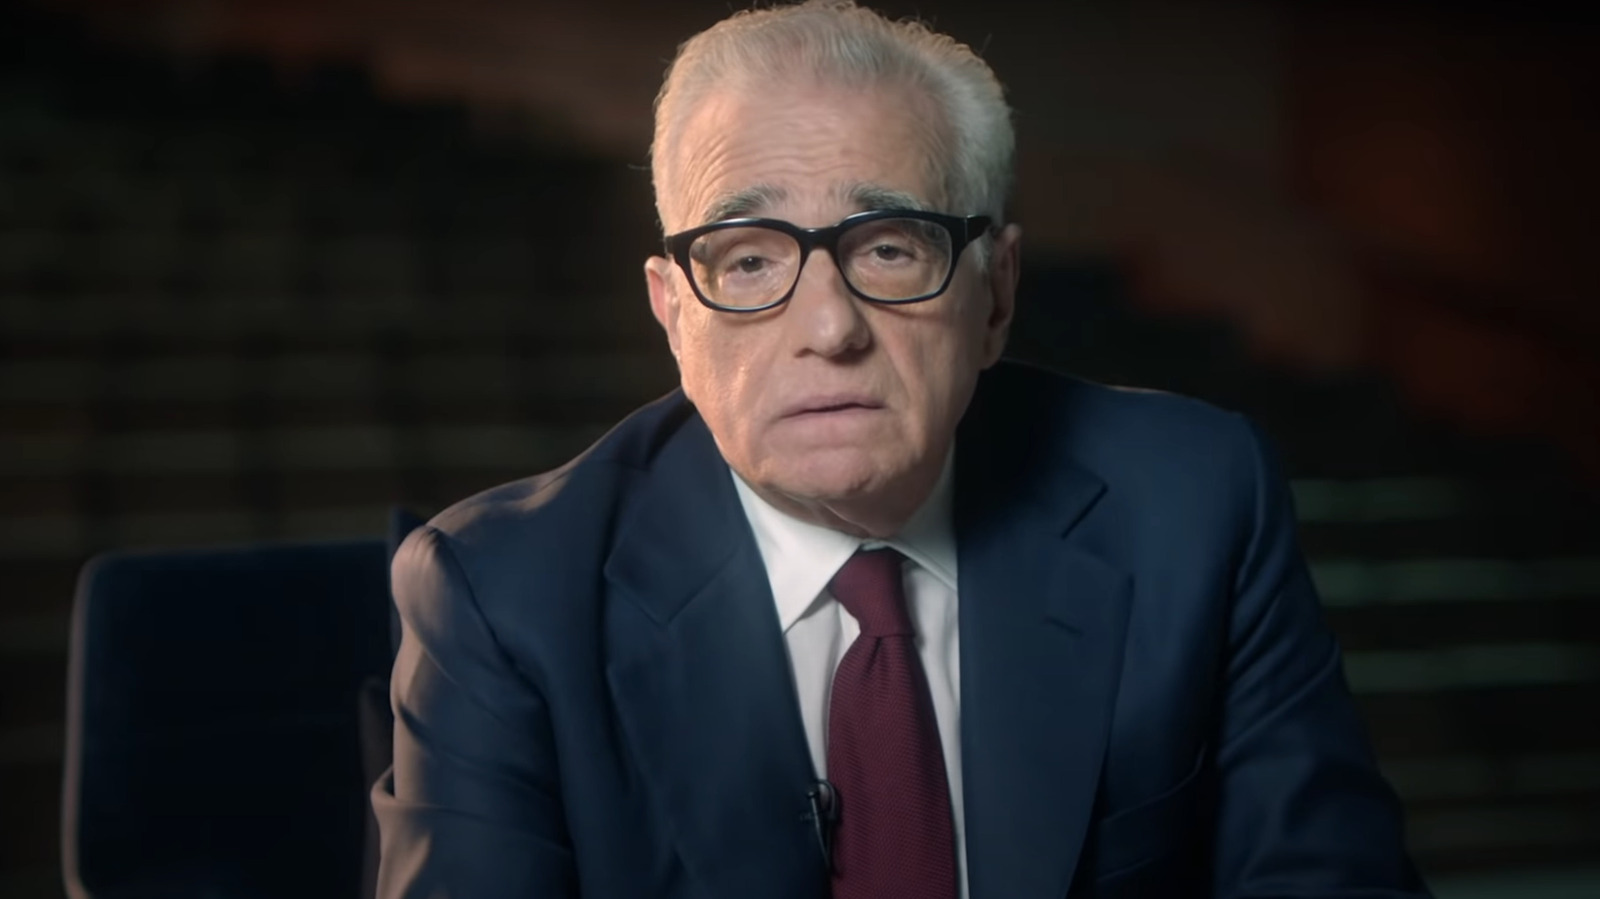 Martin Scorsese est apparemment en train de faire un autre film sur Jésus